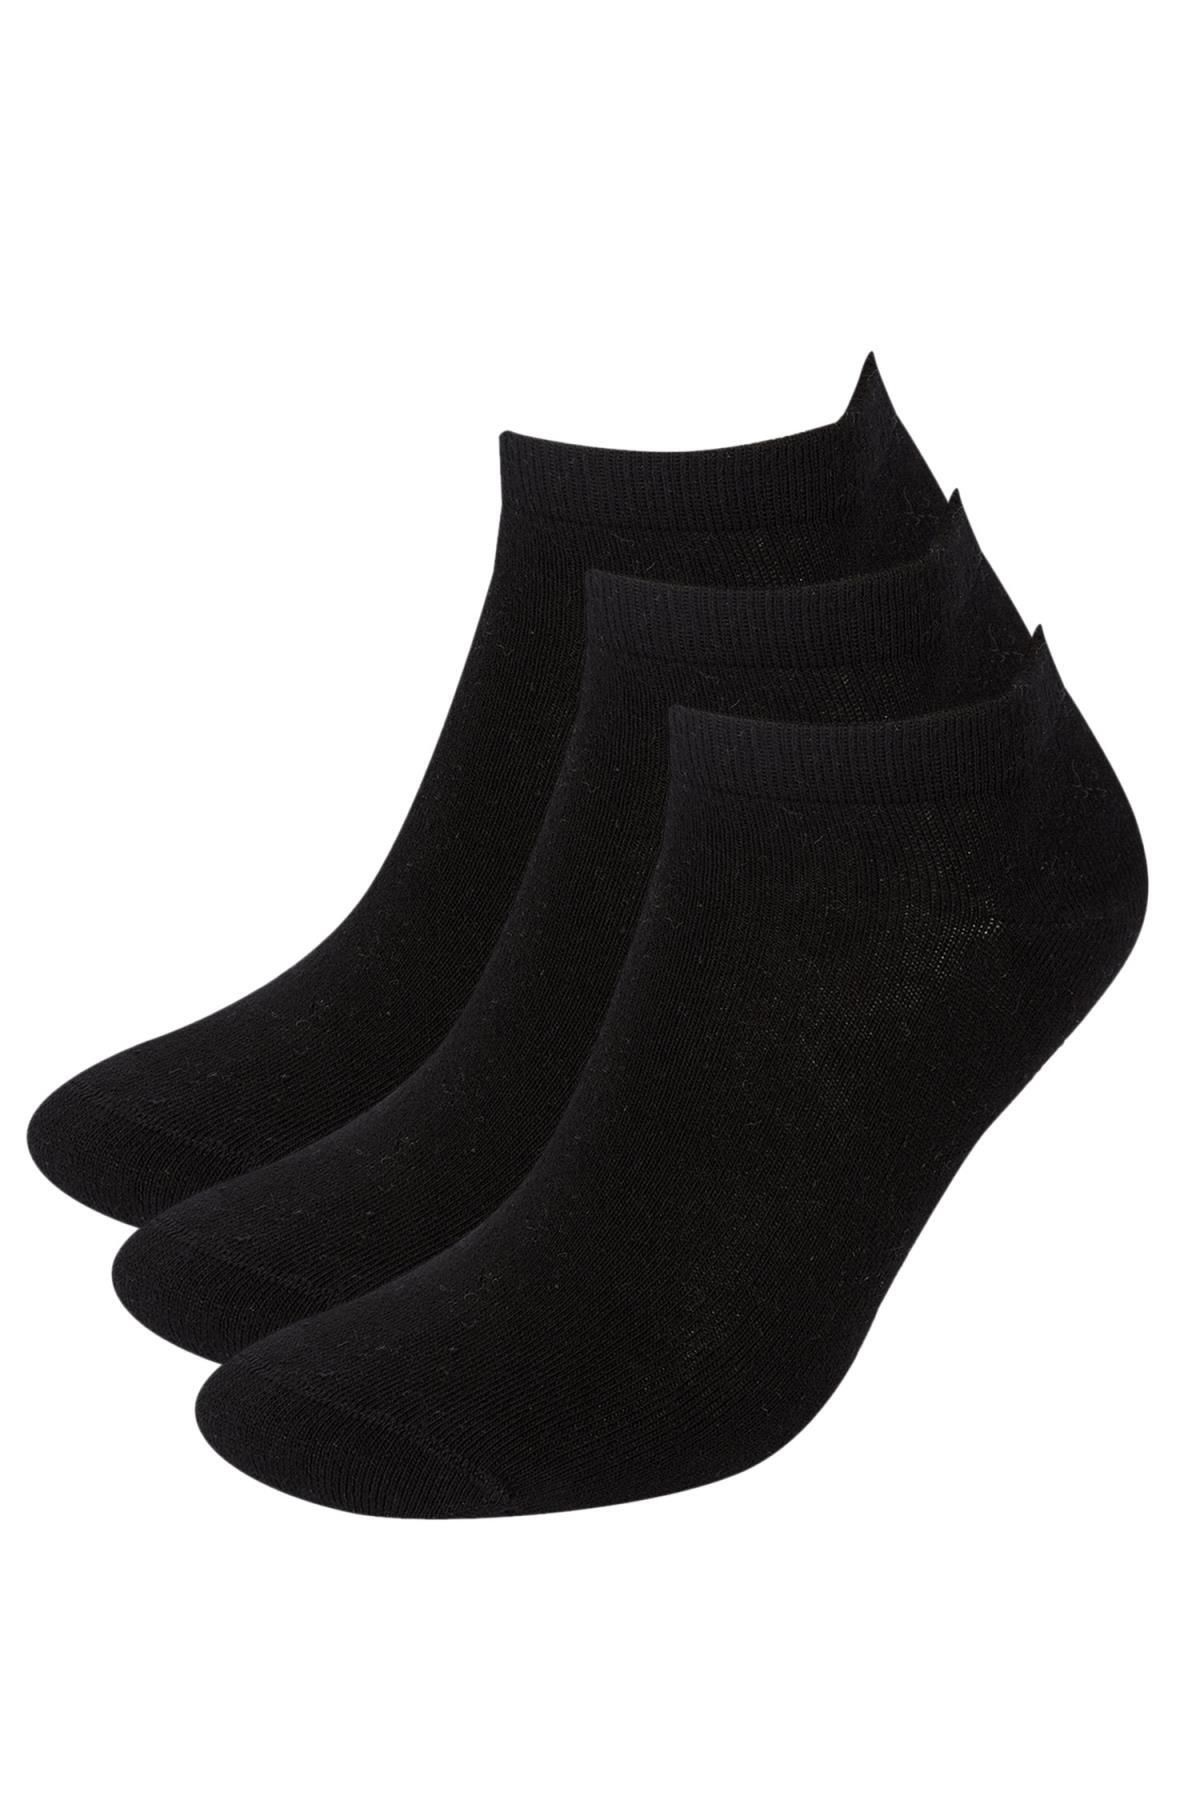 Defacto Erkek Pamuklu 3lü Kısa Çorap S3904azns